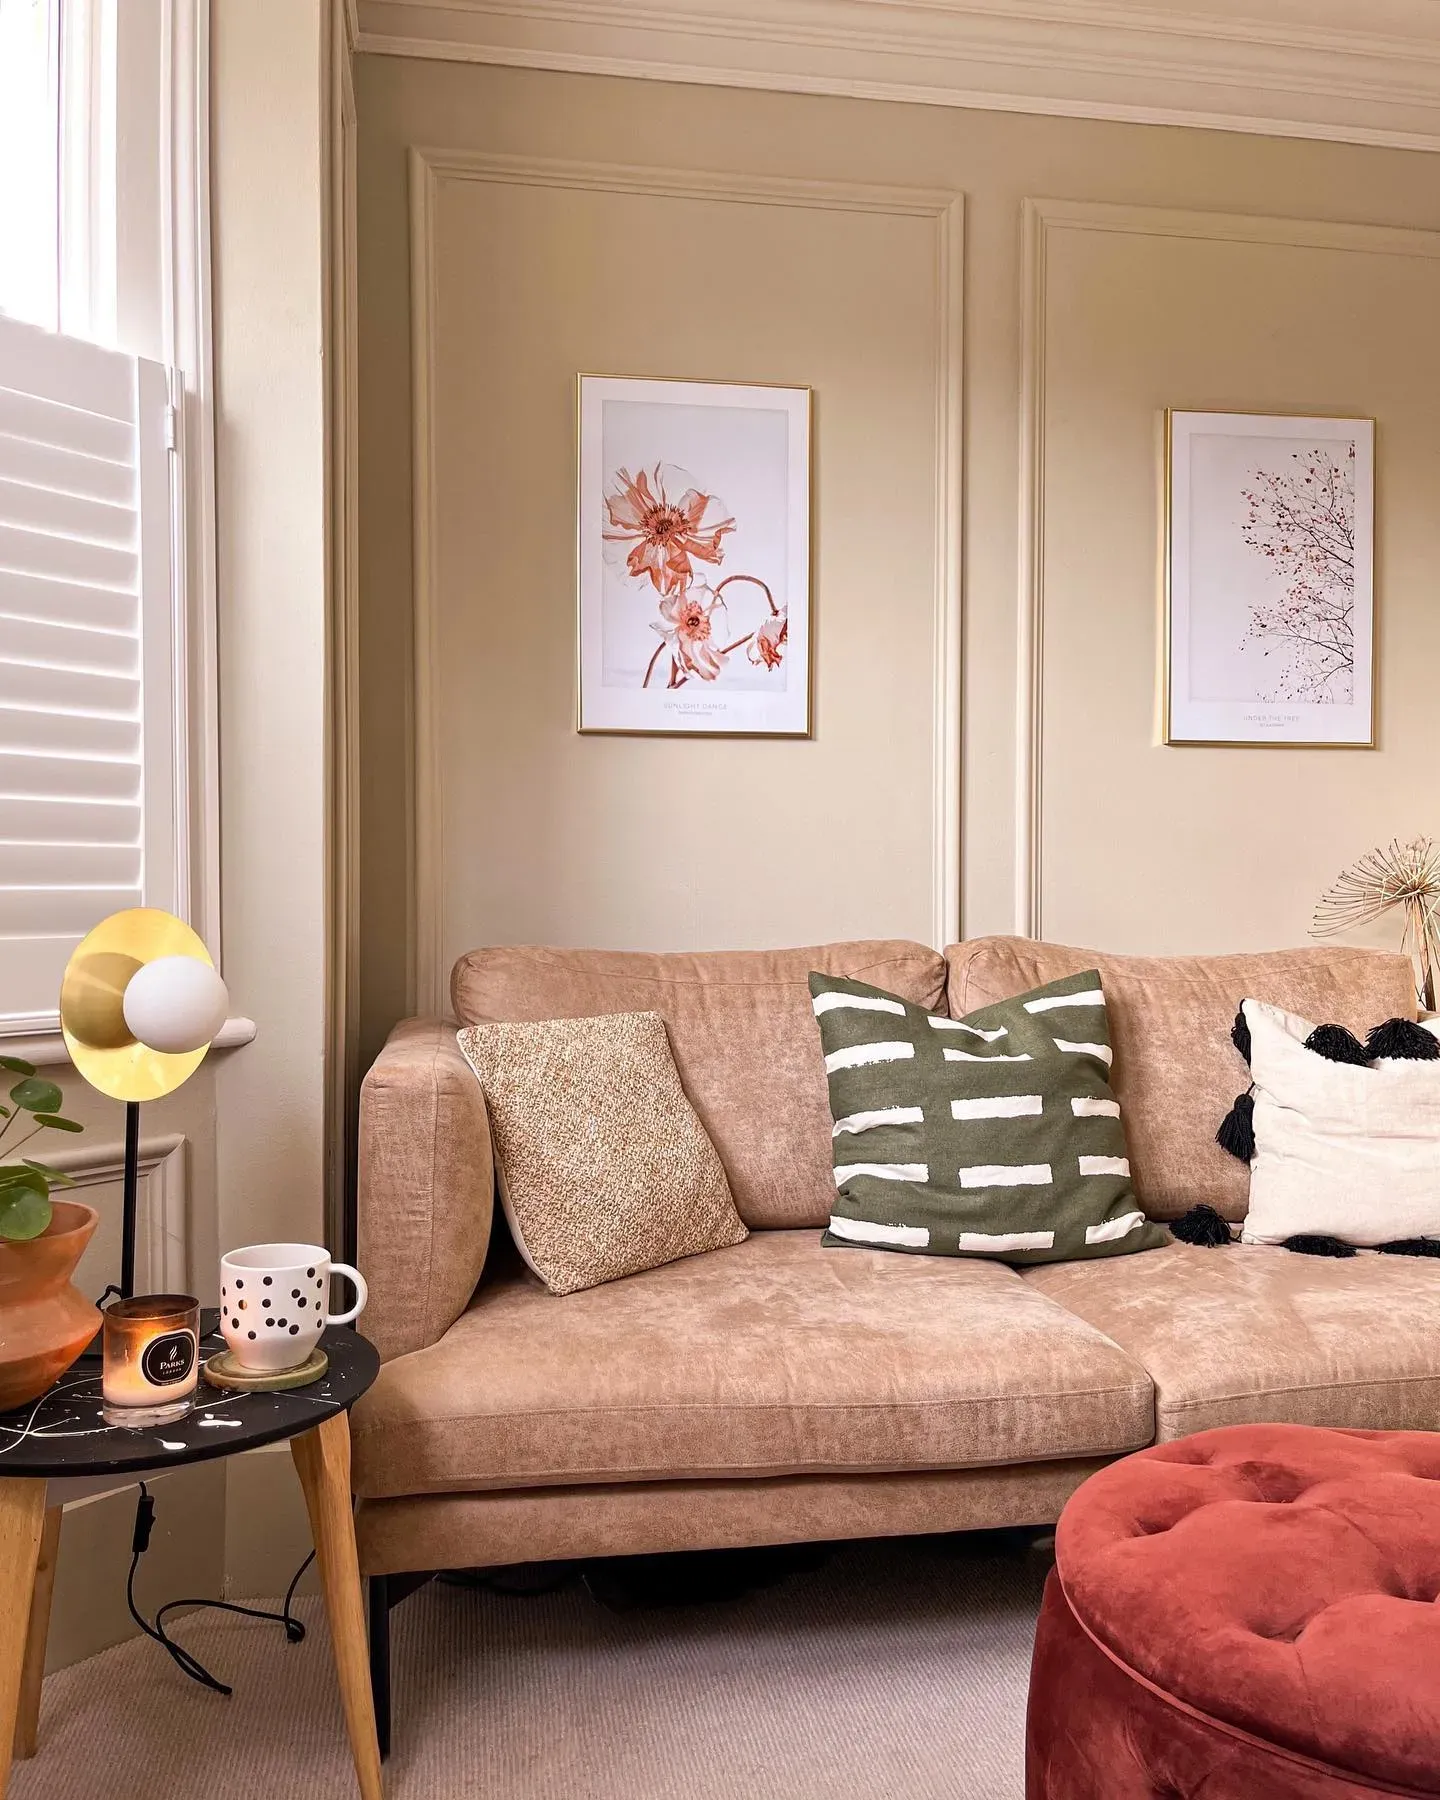 Raw Cashmere living room inspiration